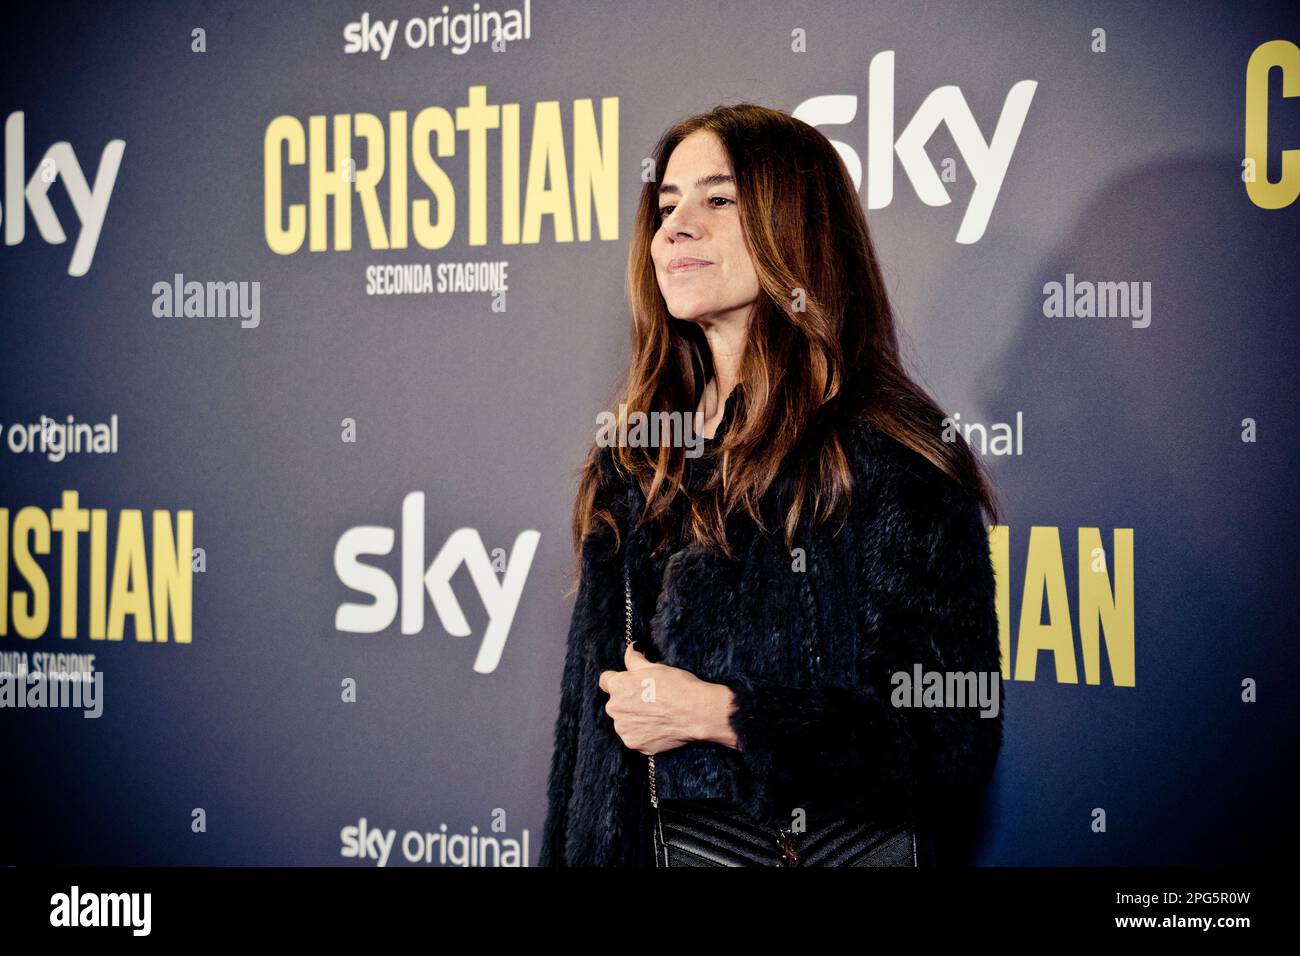 Rome, Italy, 20th March 2023,  attends the premiere of 'Christian - seconda stagione' at Cinema Barberini (Photo credits: Giovanna Onofri) Stock Photo